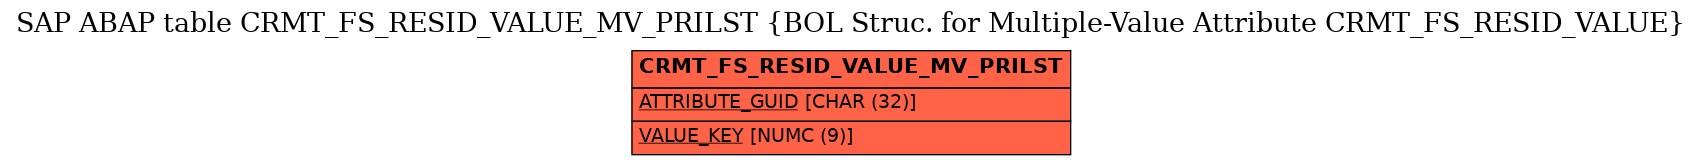 E-R Diagram for table CRMT_FS_RESID_VALUE_MV_PRILST (BOL Struc. for Multiple-Value Attribute CRMT_FS_RESID_VALUE)